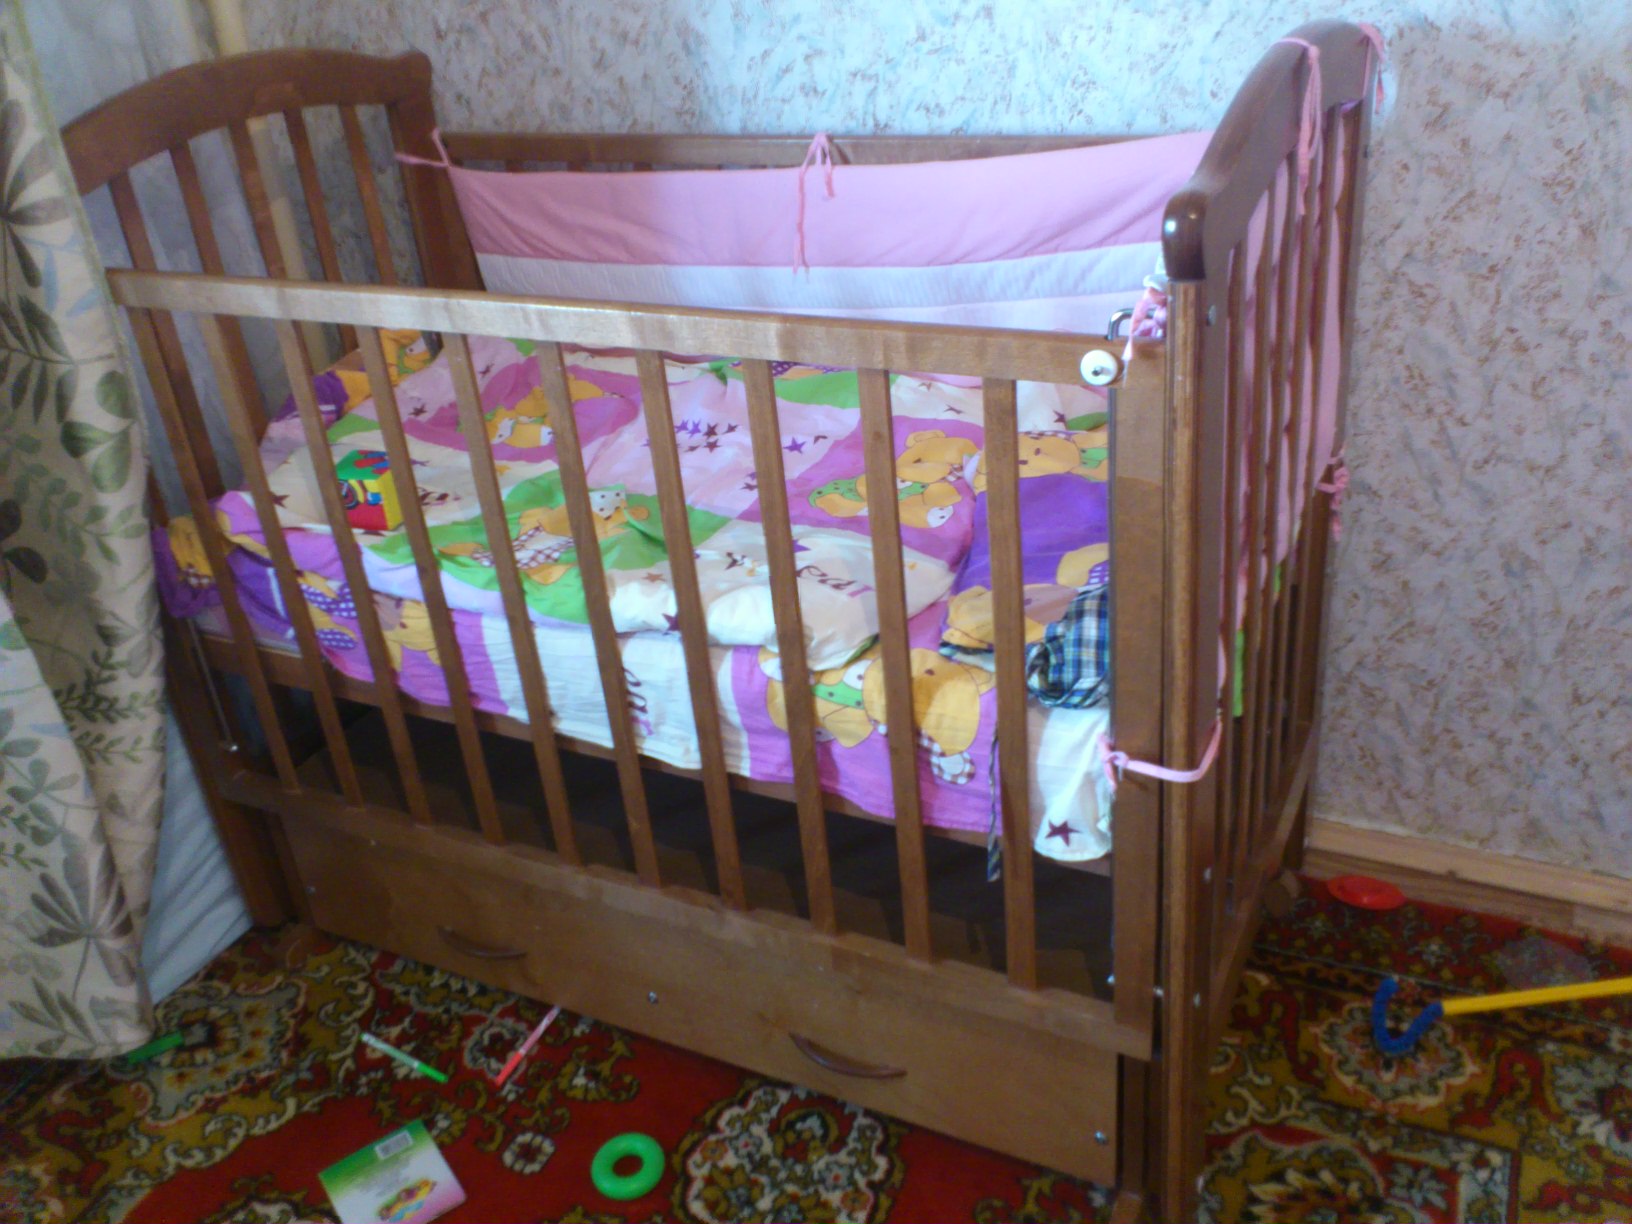 Где Купить Детскую Кроватку Новосибирск